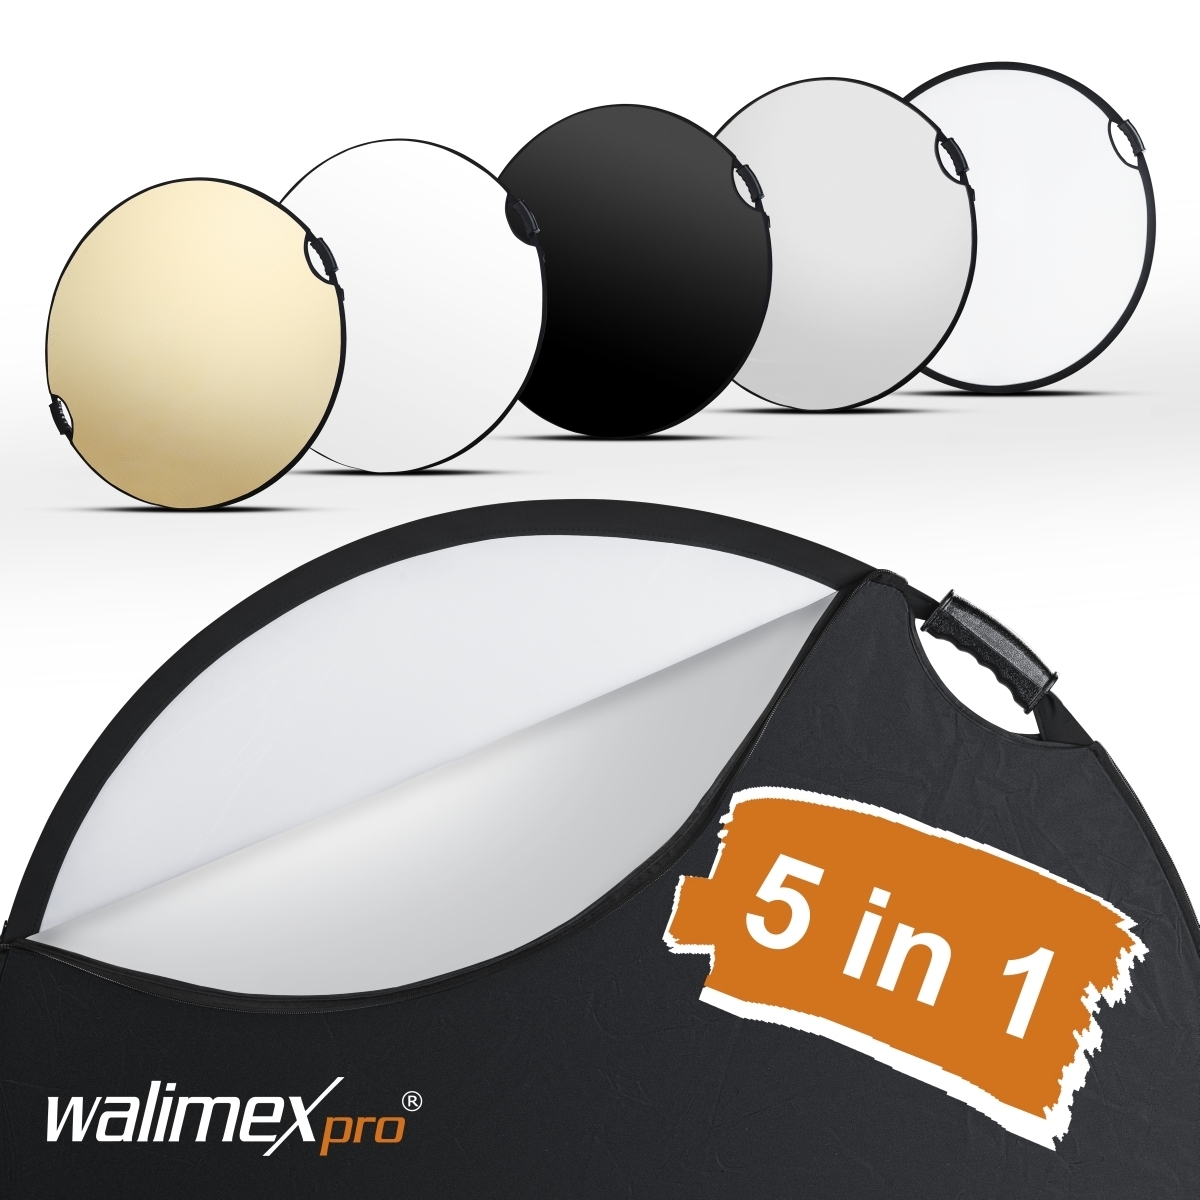 Walimex pro 5in1 riflettore pieghevole wavy comfort Ø80cm con maniglie e 5 colori di riflettore